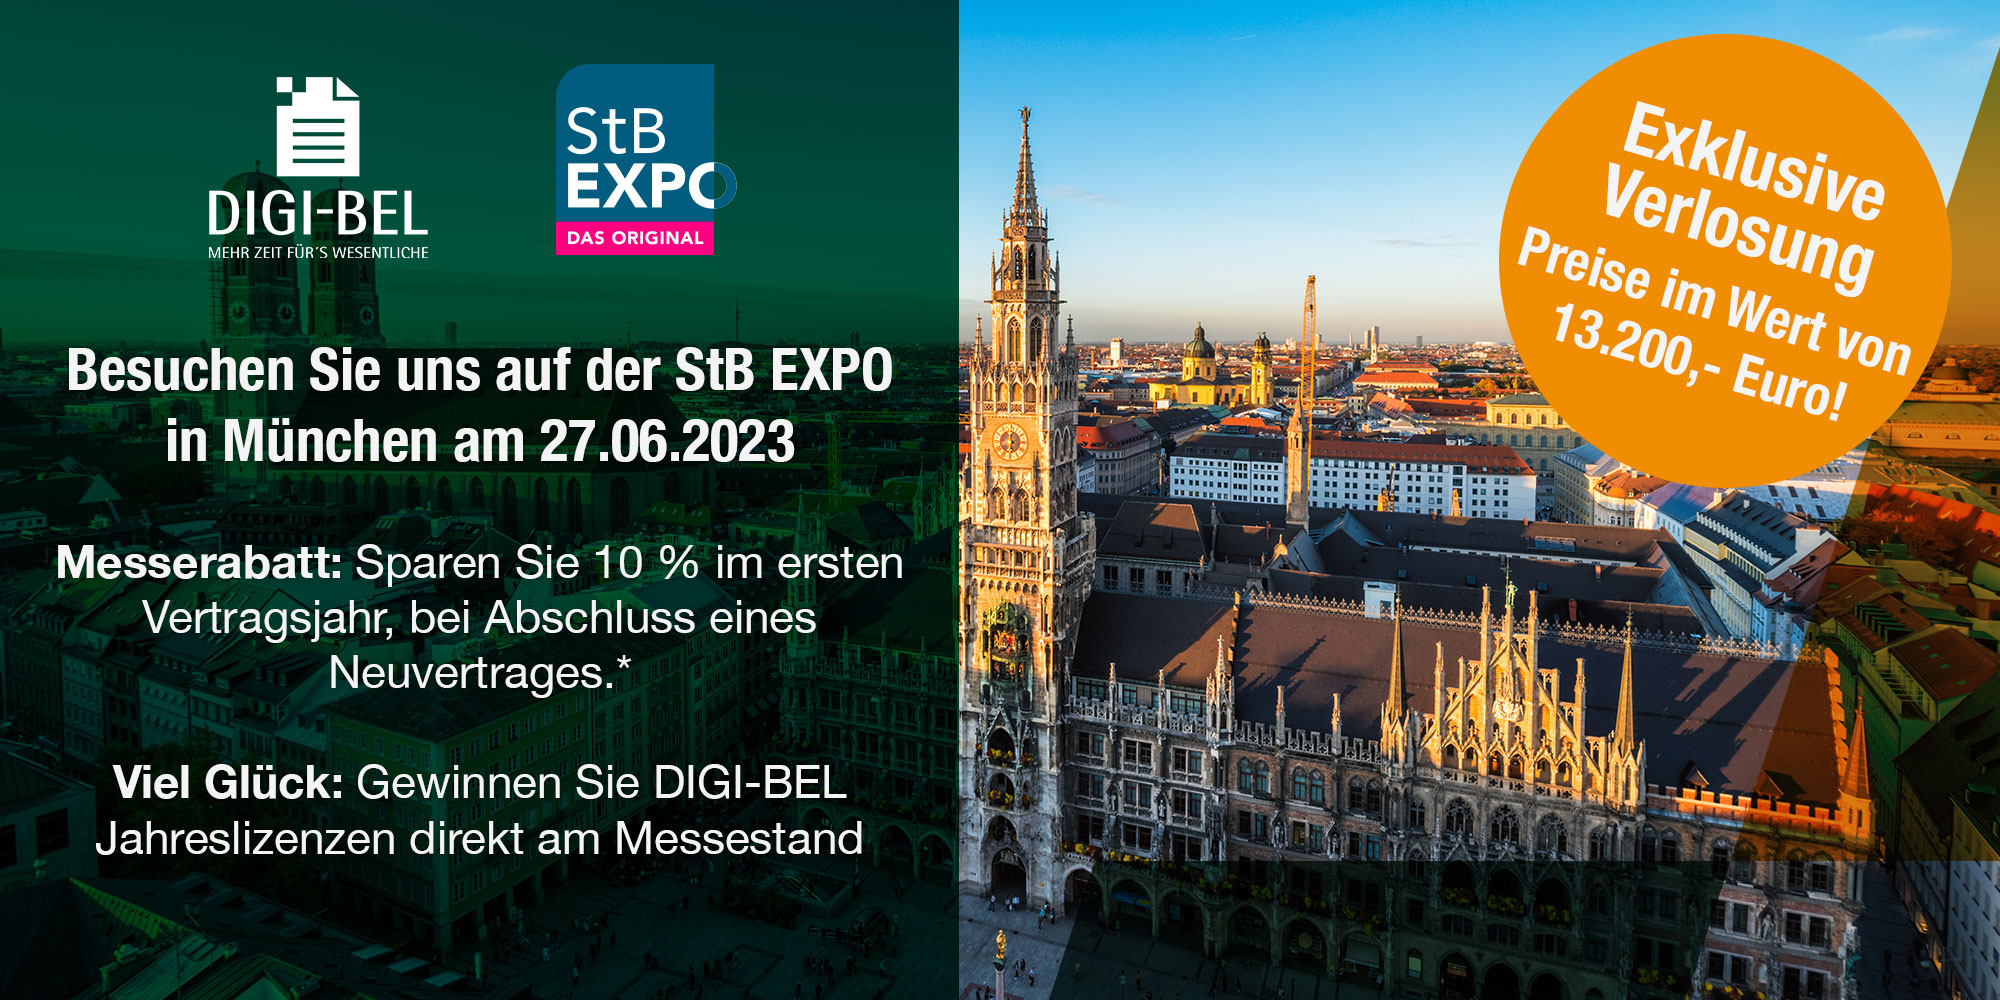 DIGI-BEL ist auf der StB EXPO in München am 27.06.2023